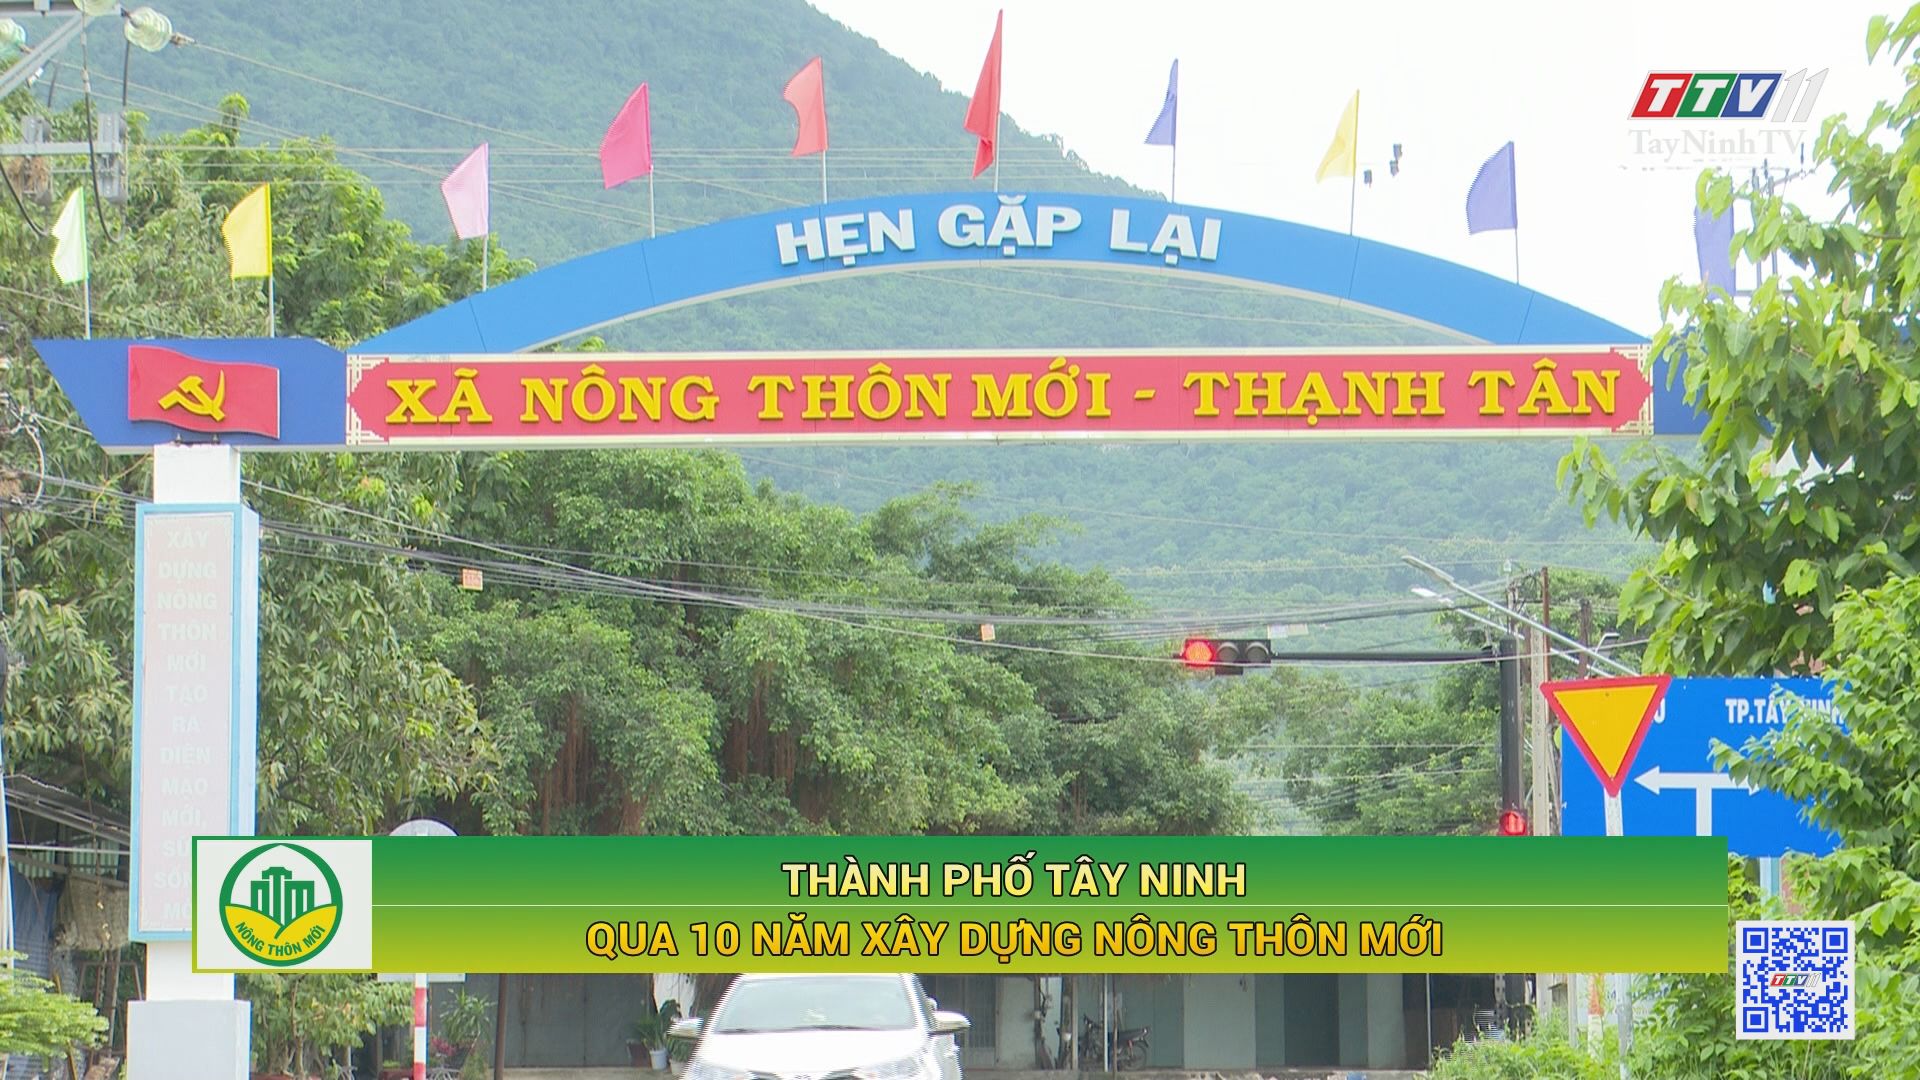 Thành phố Tây Ninh qua 10 năm xây dựng nông thôn mới | TÂY NINH XÂY DỰNG NÔNG THÔN MỚI | TayNinhTV